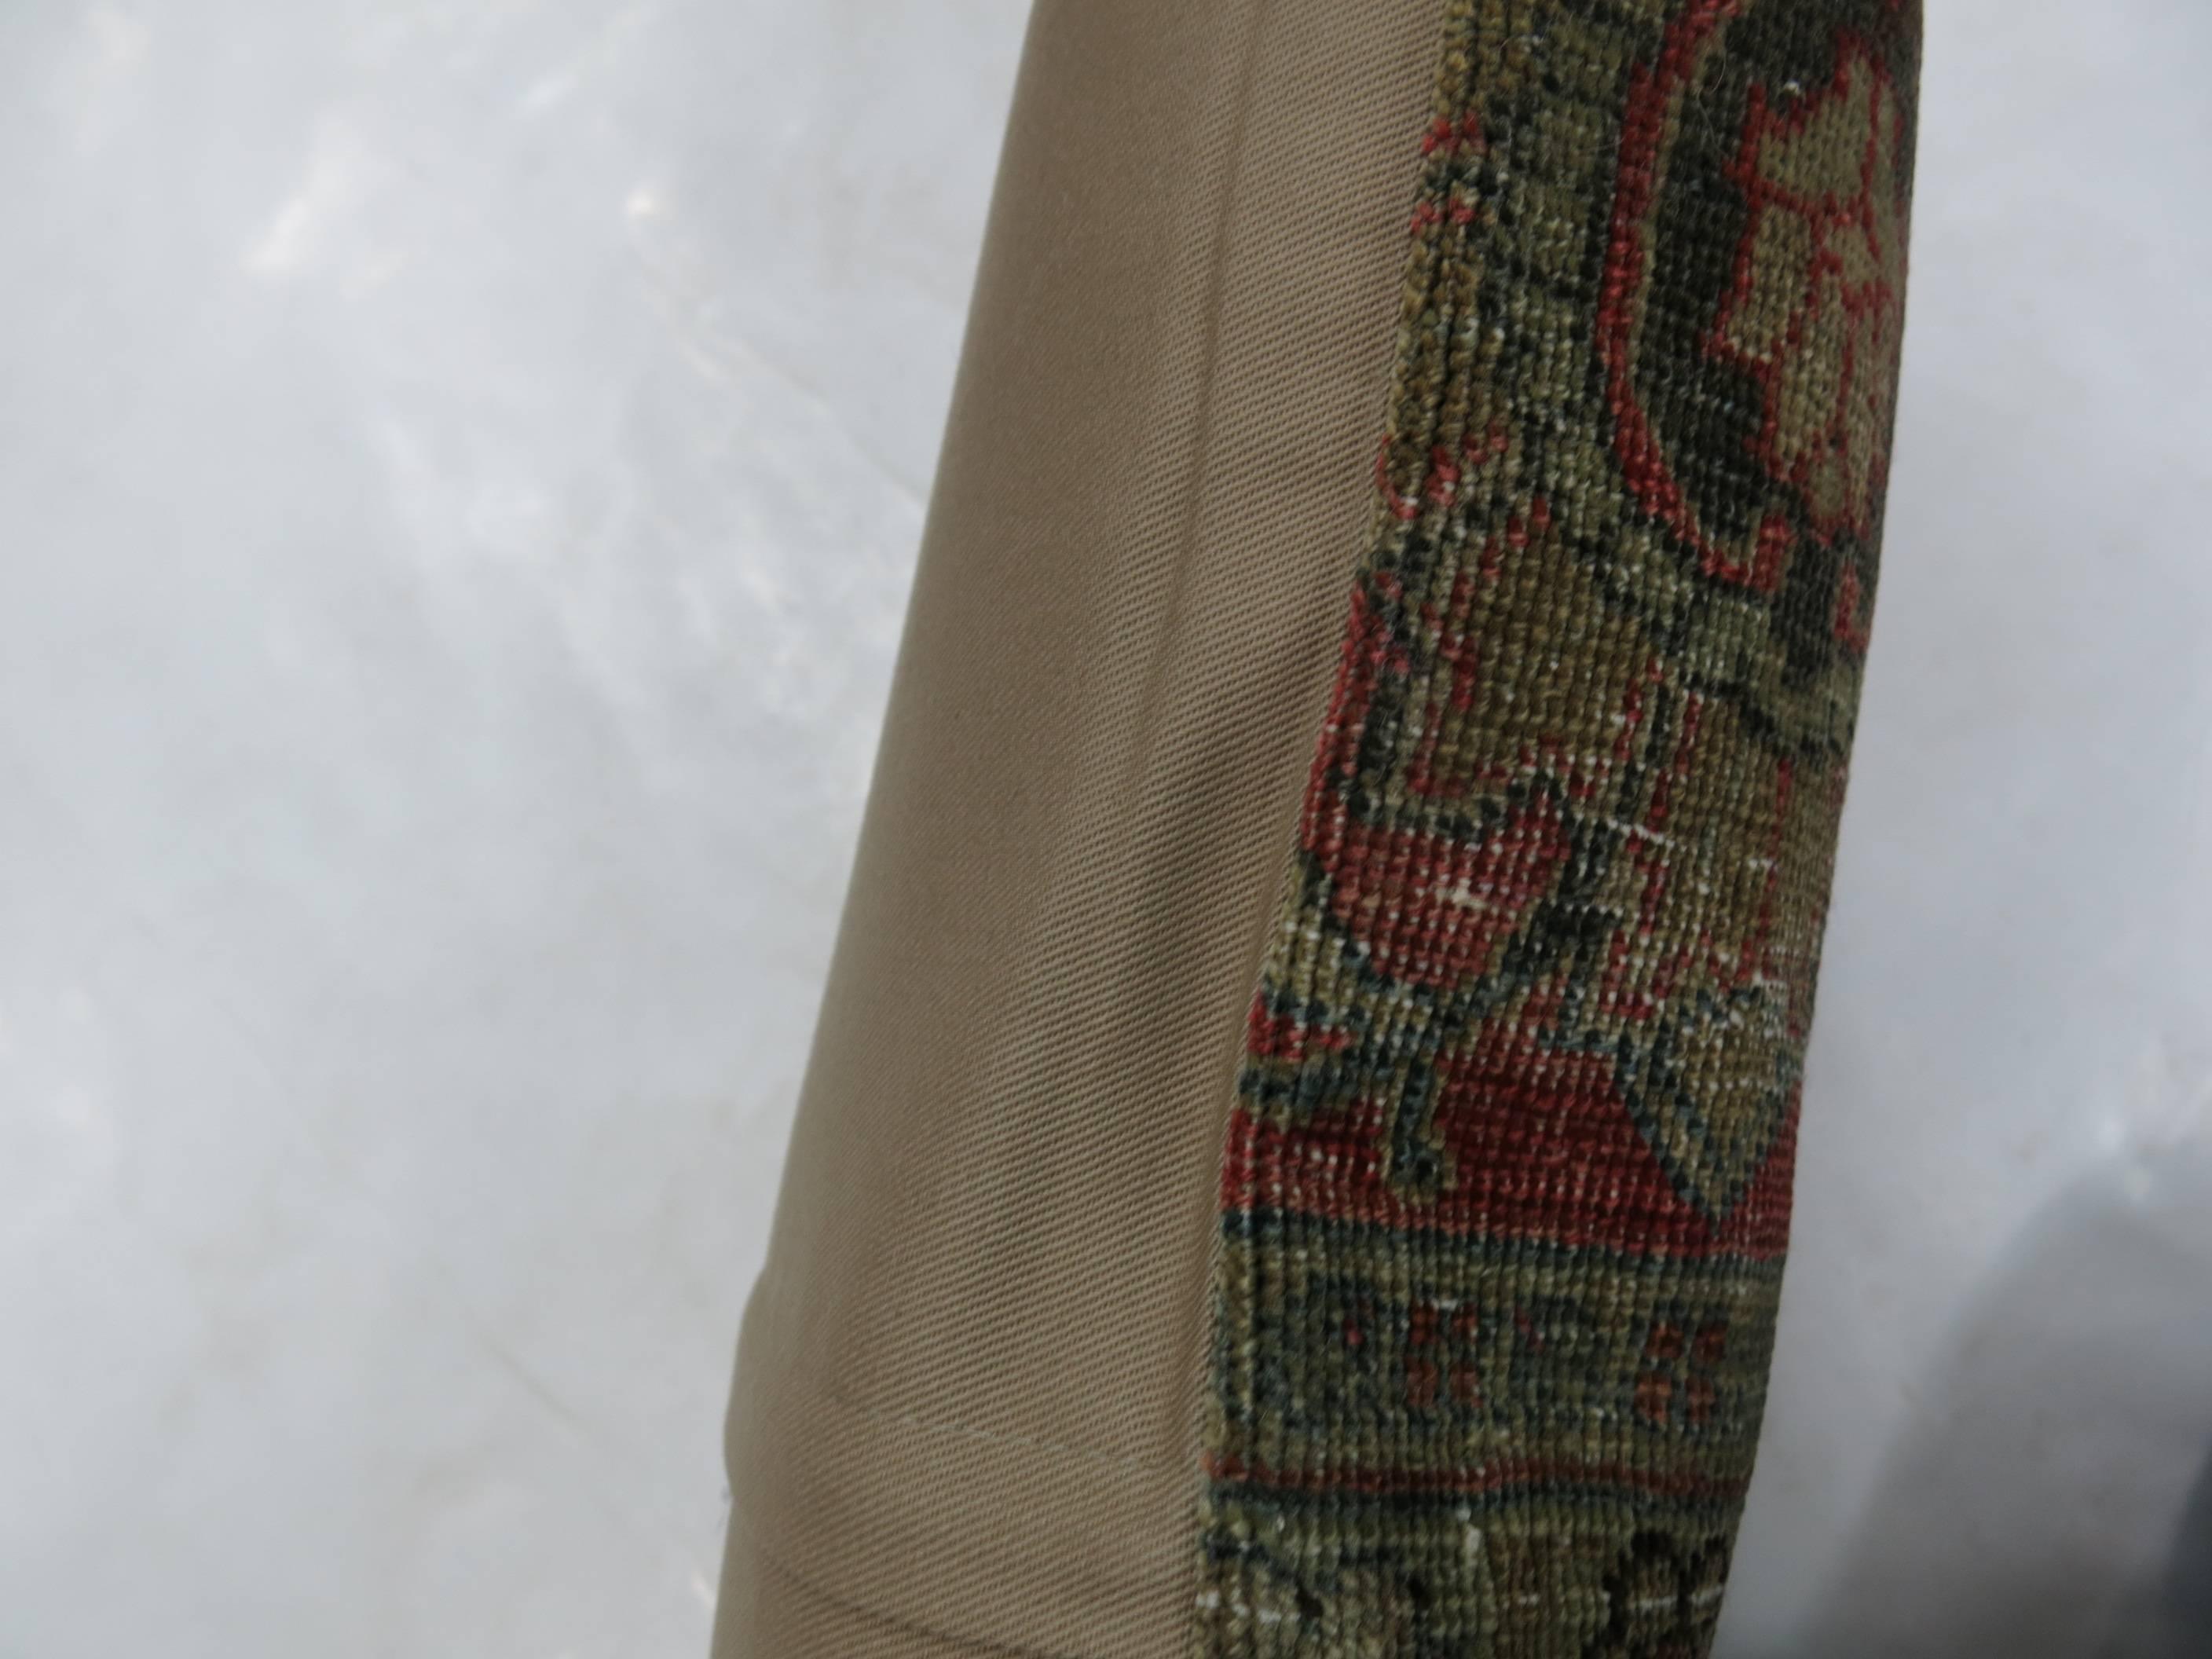 Coussin lombaire fabriqué à partir d'un tapis persan Tabriz du début du XXe siècle

Taille : 15